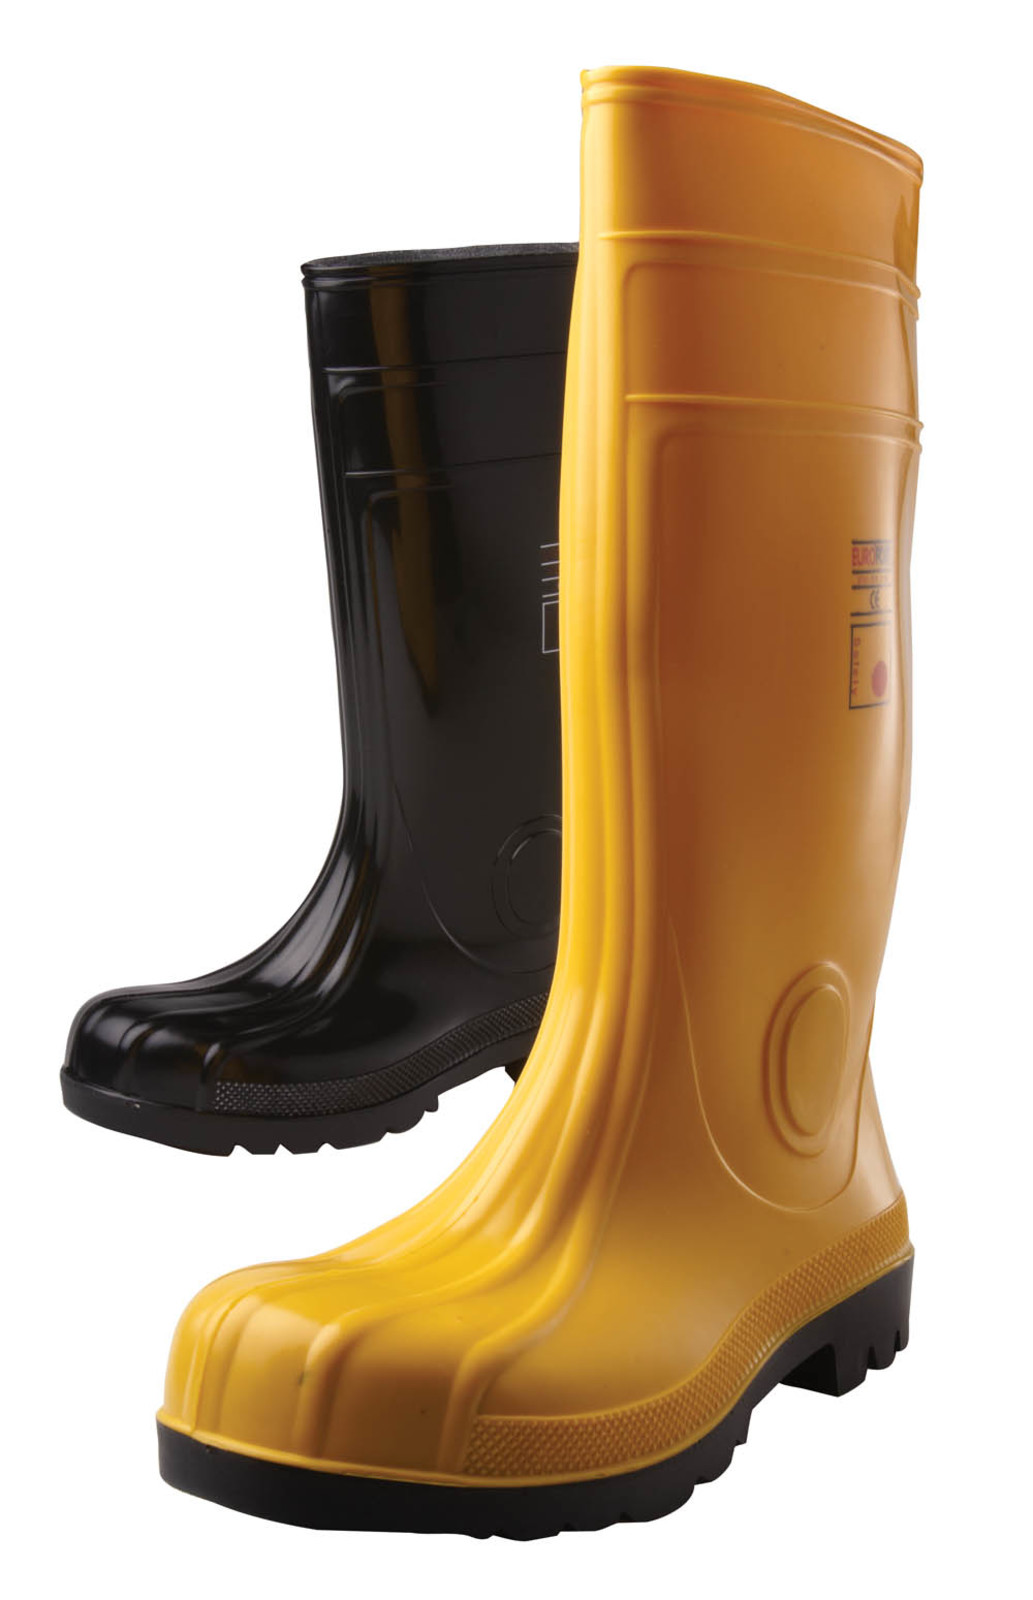 Gumáky Boots Eurofort  S5 - veľkosť: 41, farba: žltá